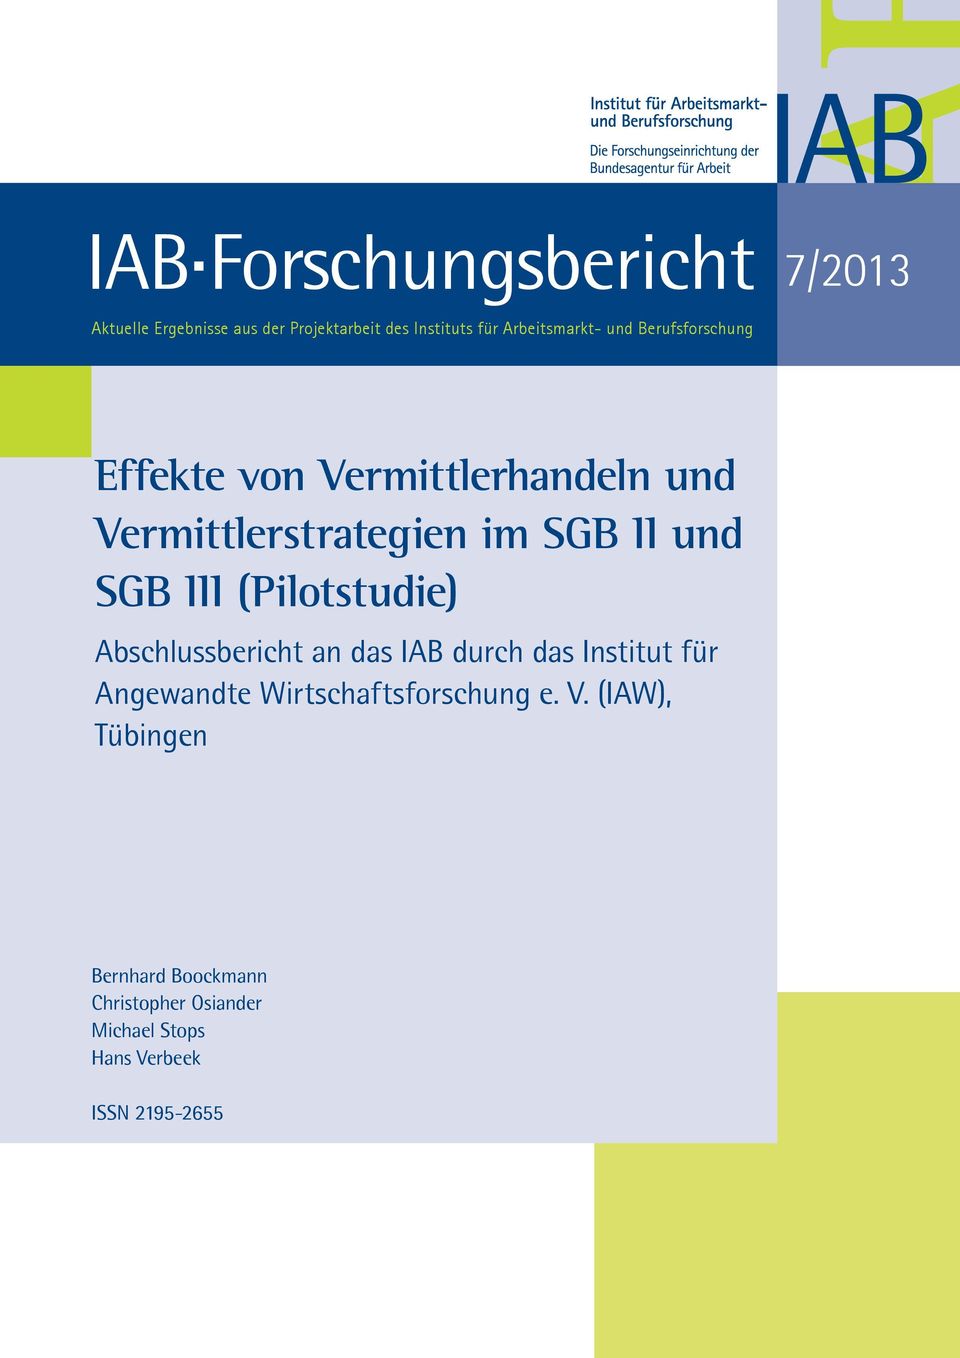 und SGB III (Pilotstudie) Abschlussbericht an das IAB durch das Institut für Angewandte